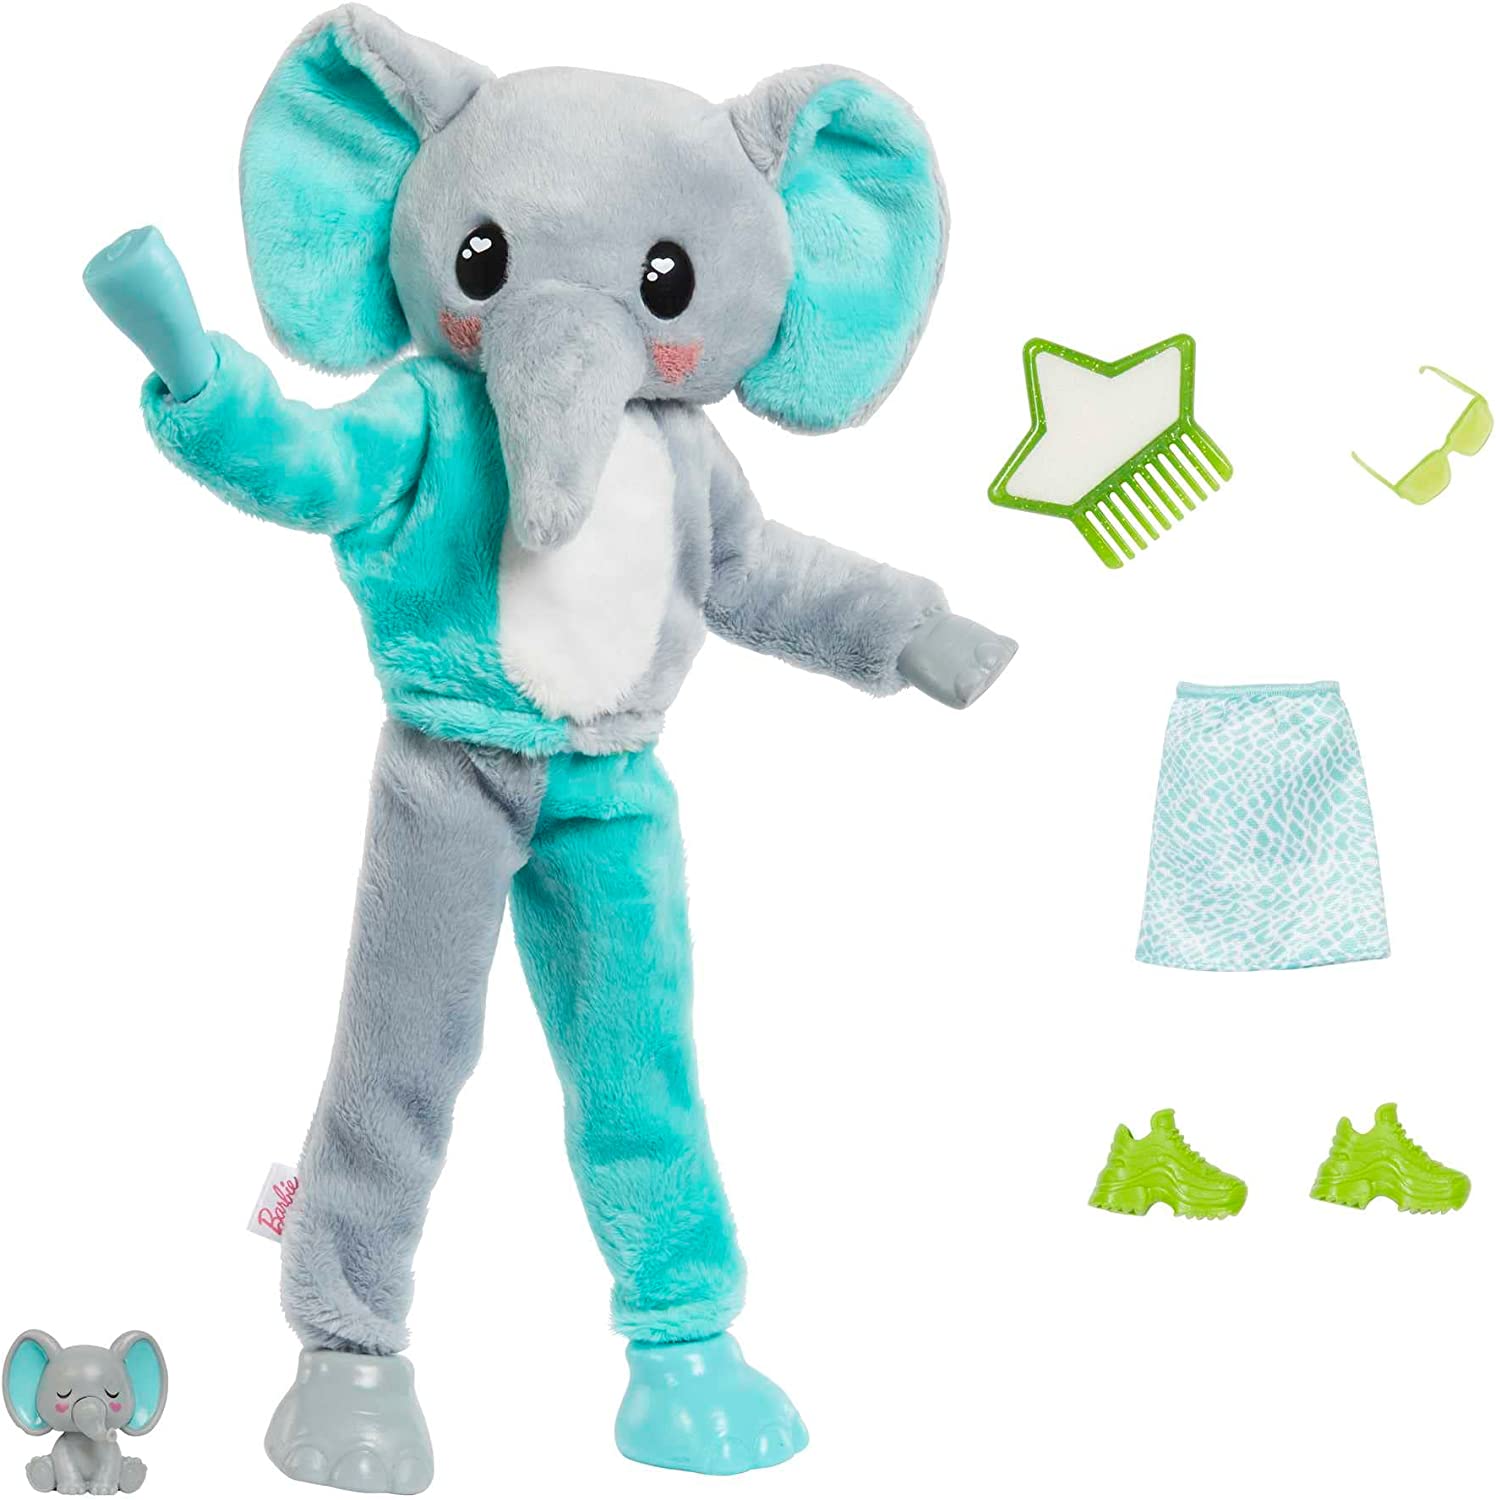 Barbie Cutie Reveal Jungle Friends 10 Yllätystä Elefantti